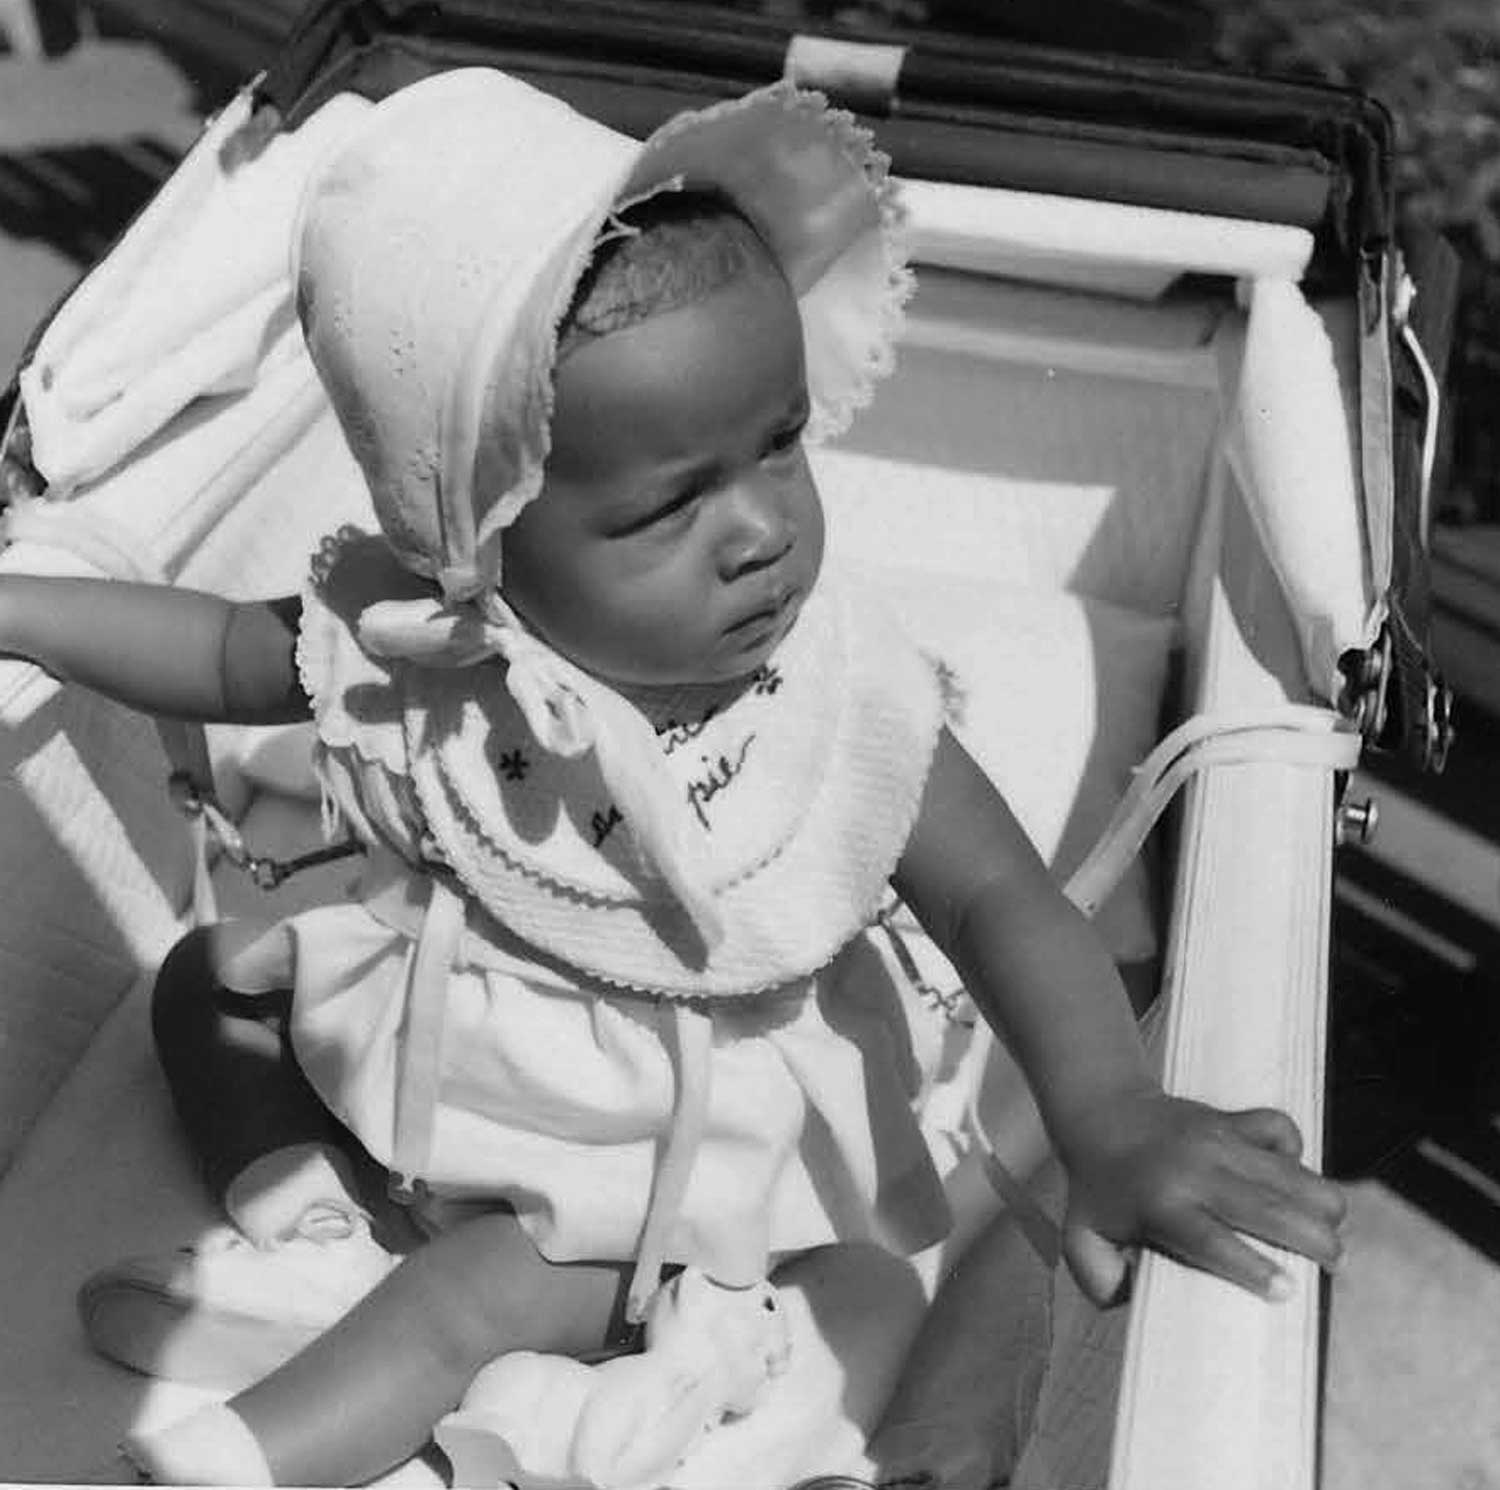   &nbsp;Karen as a baby. 1958.&nbsp;  Photo courtesy Karen Smith.  